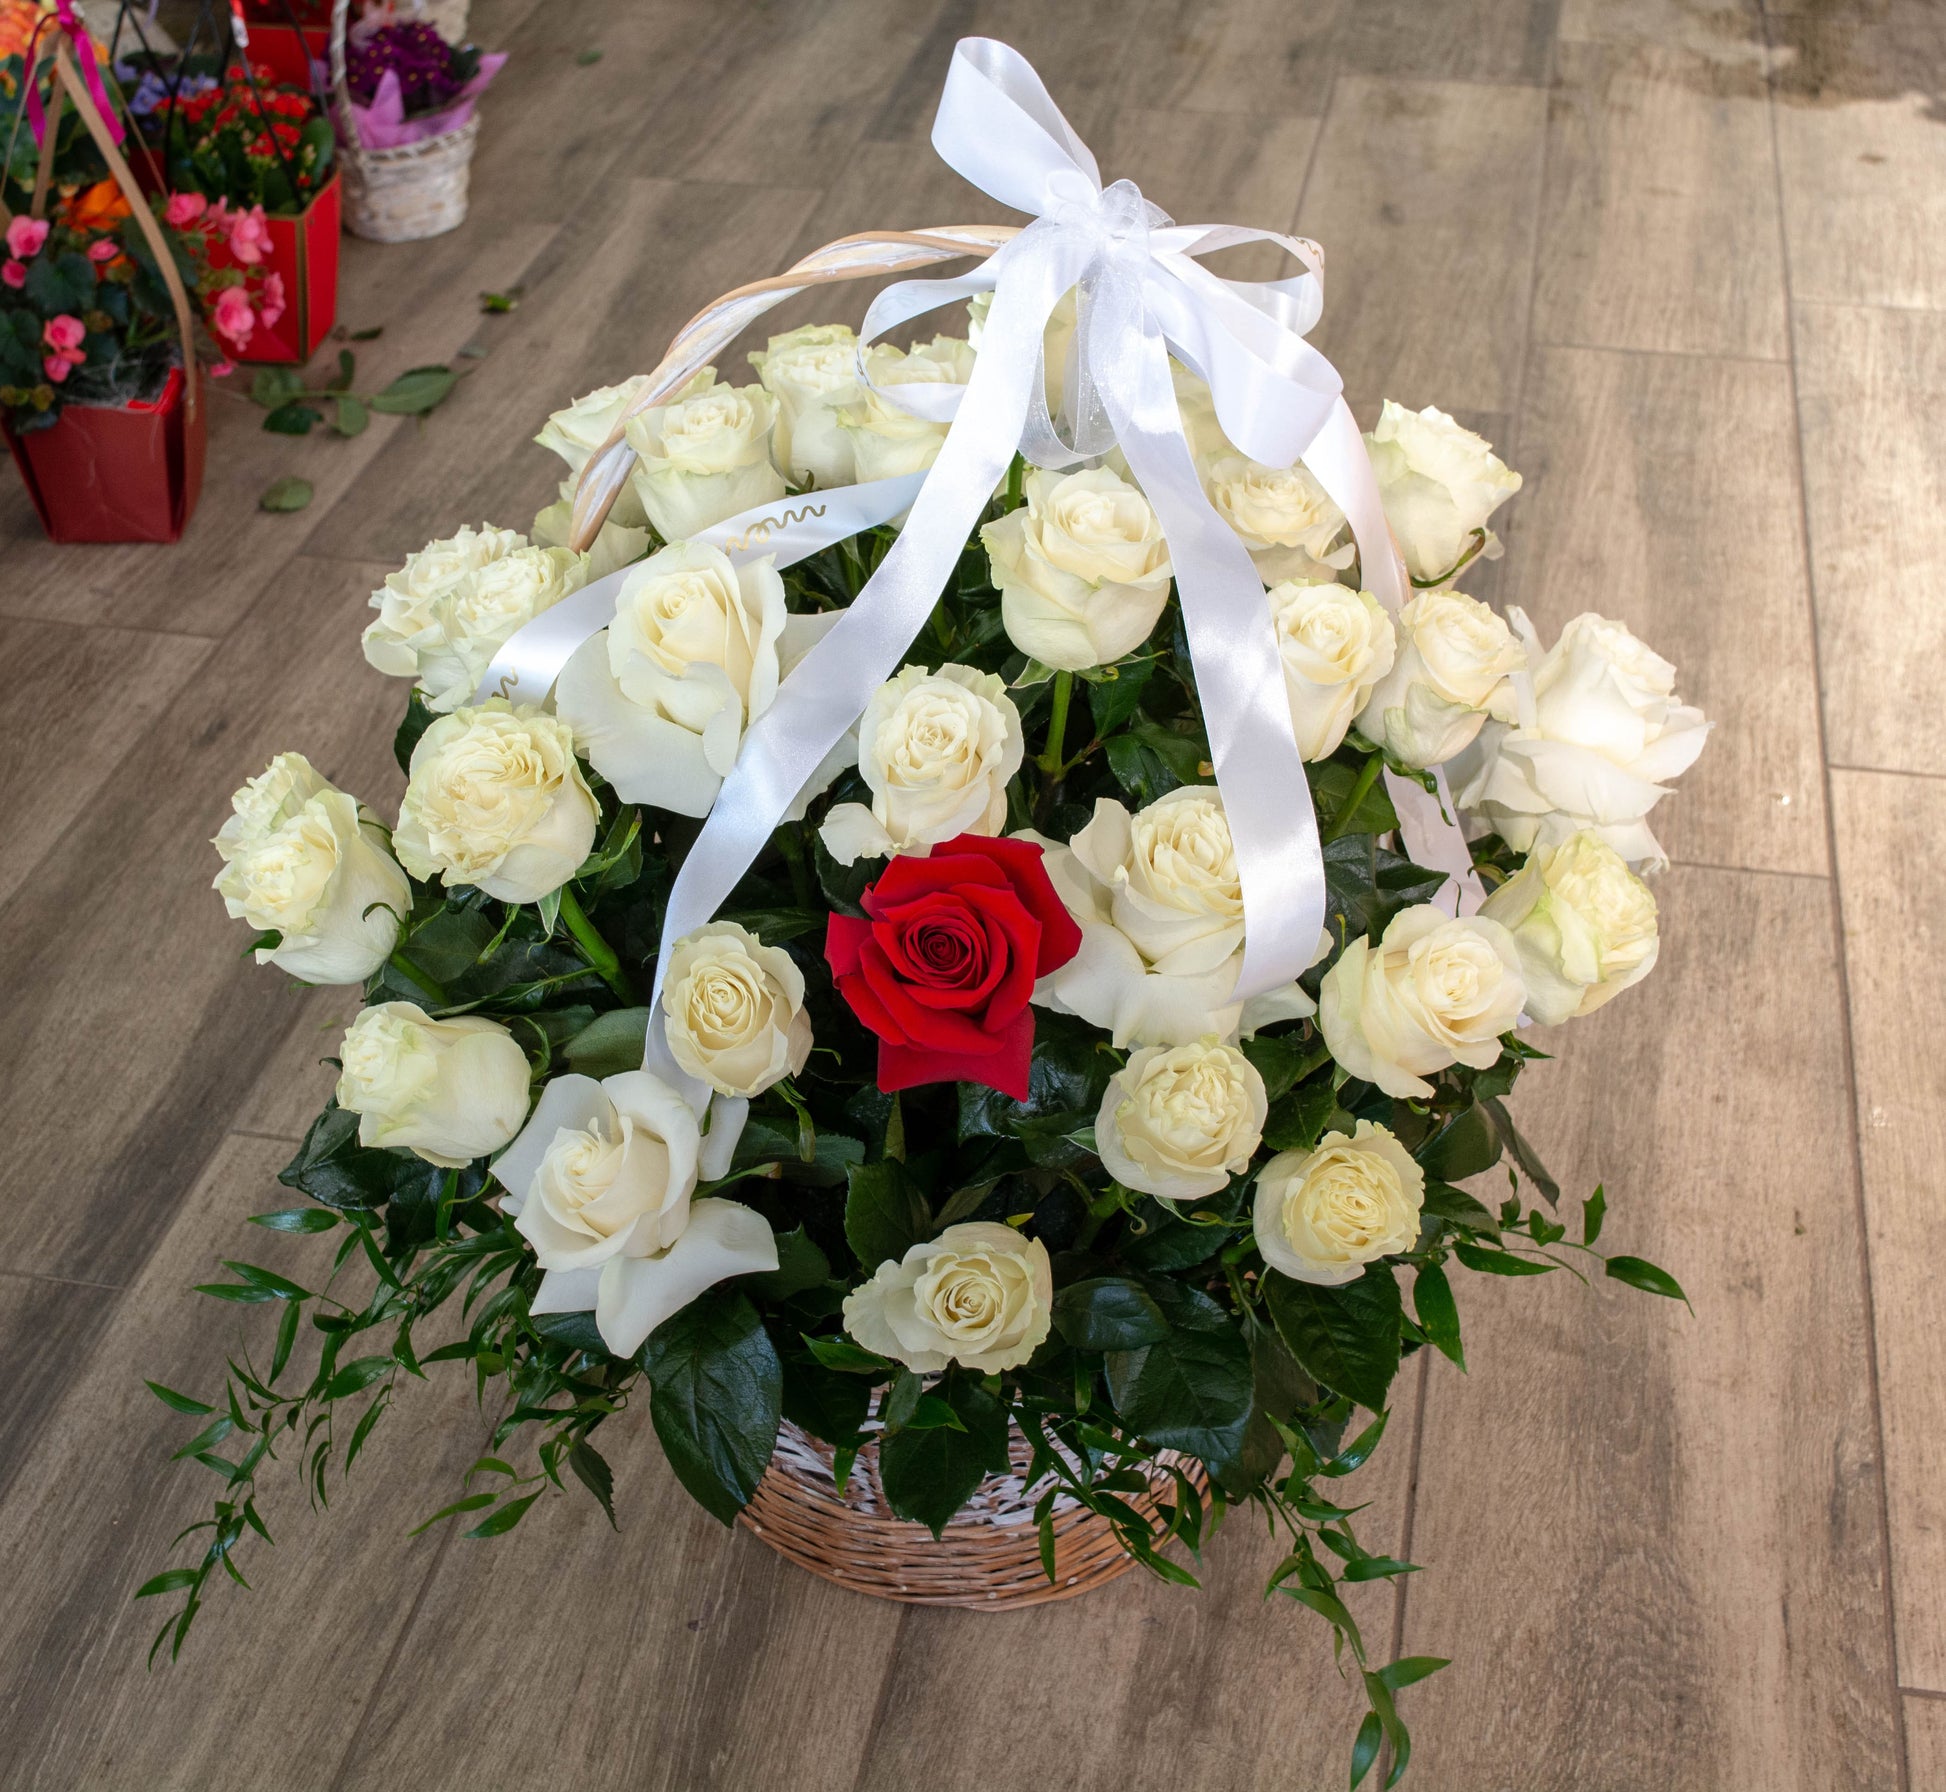 Aranjament floral impresionant cu 50 de trandafiri în culori armonioase și unul diferit, cu livrare GRATUITĂ în Resita.